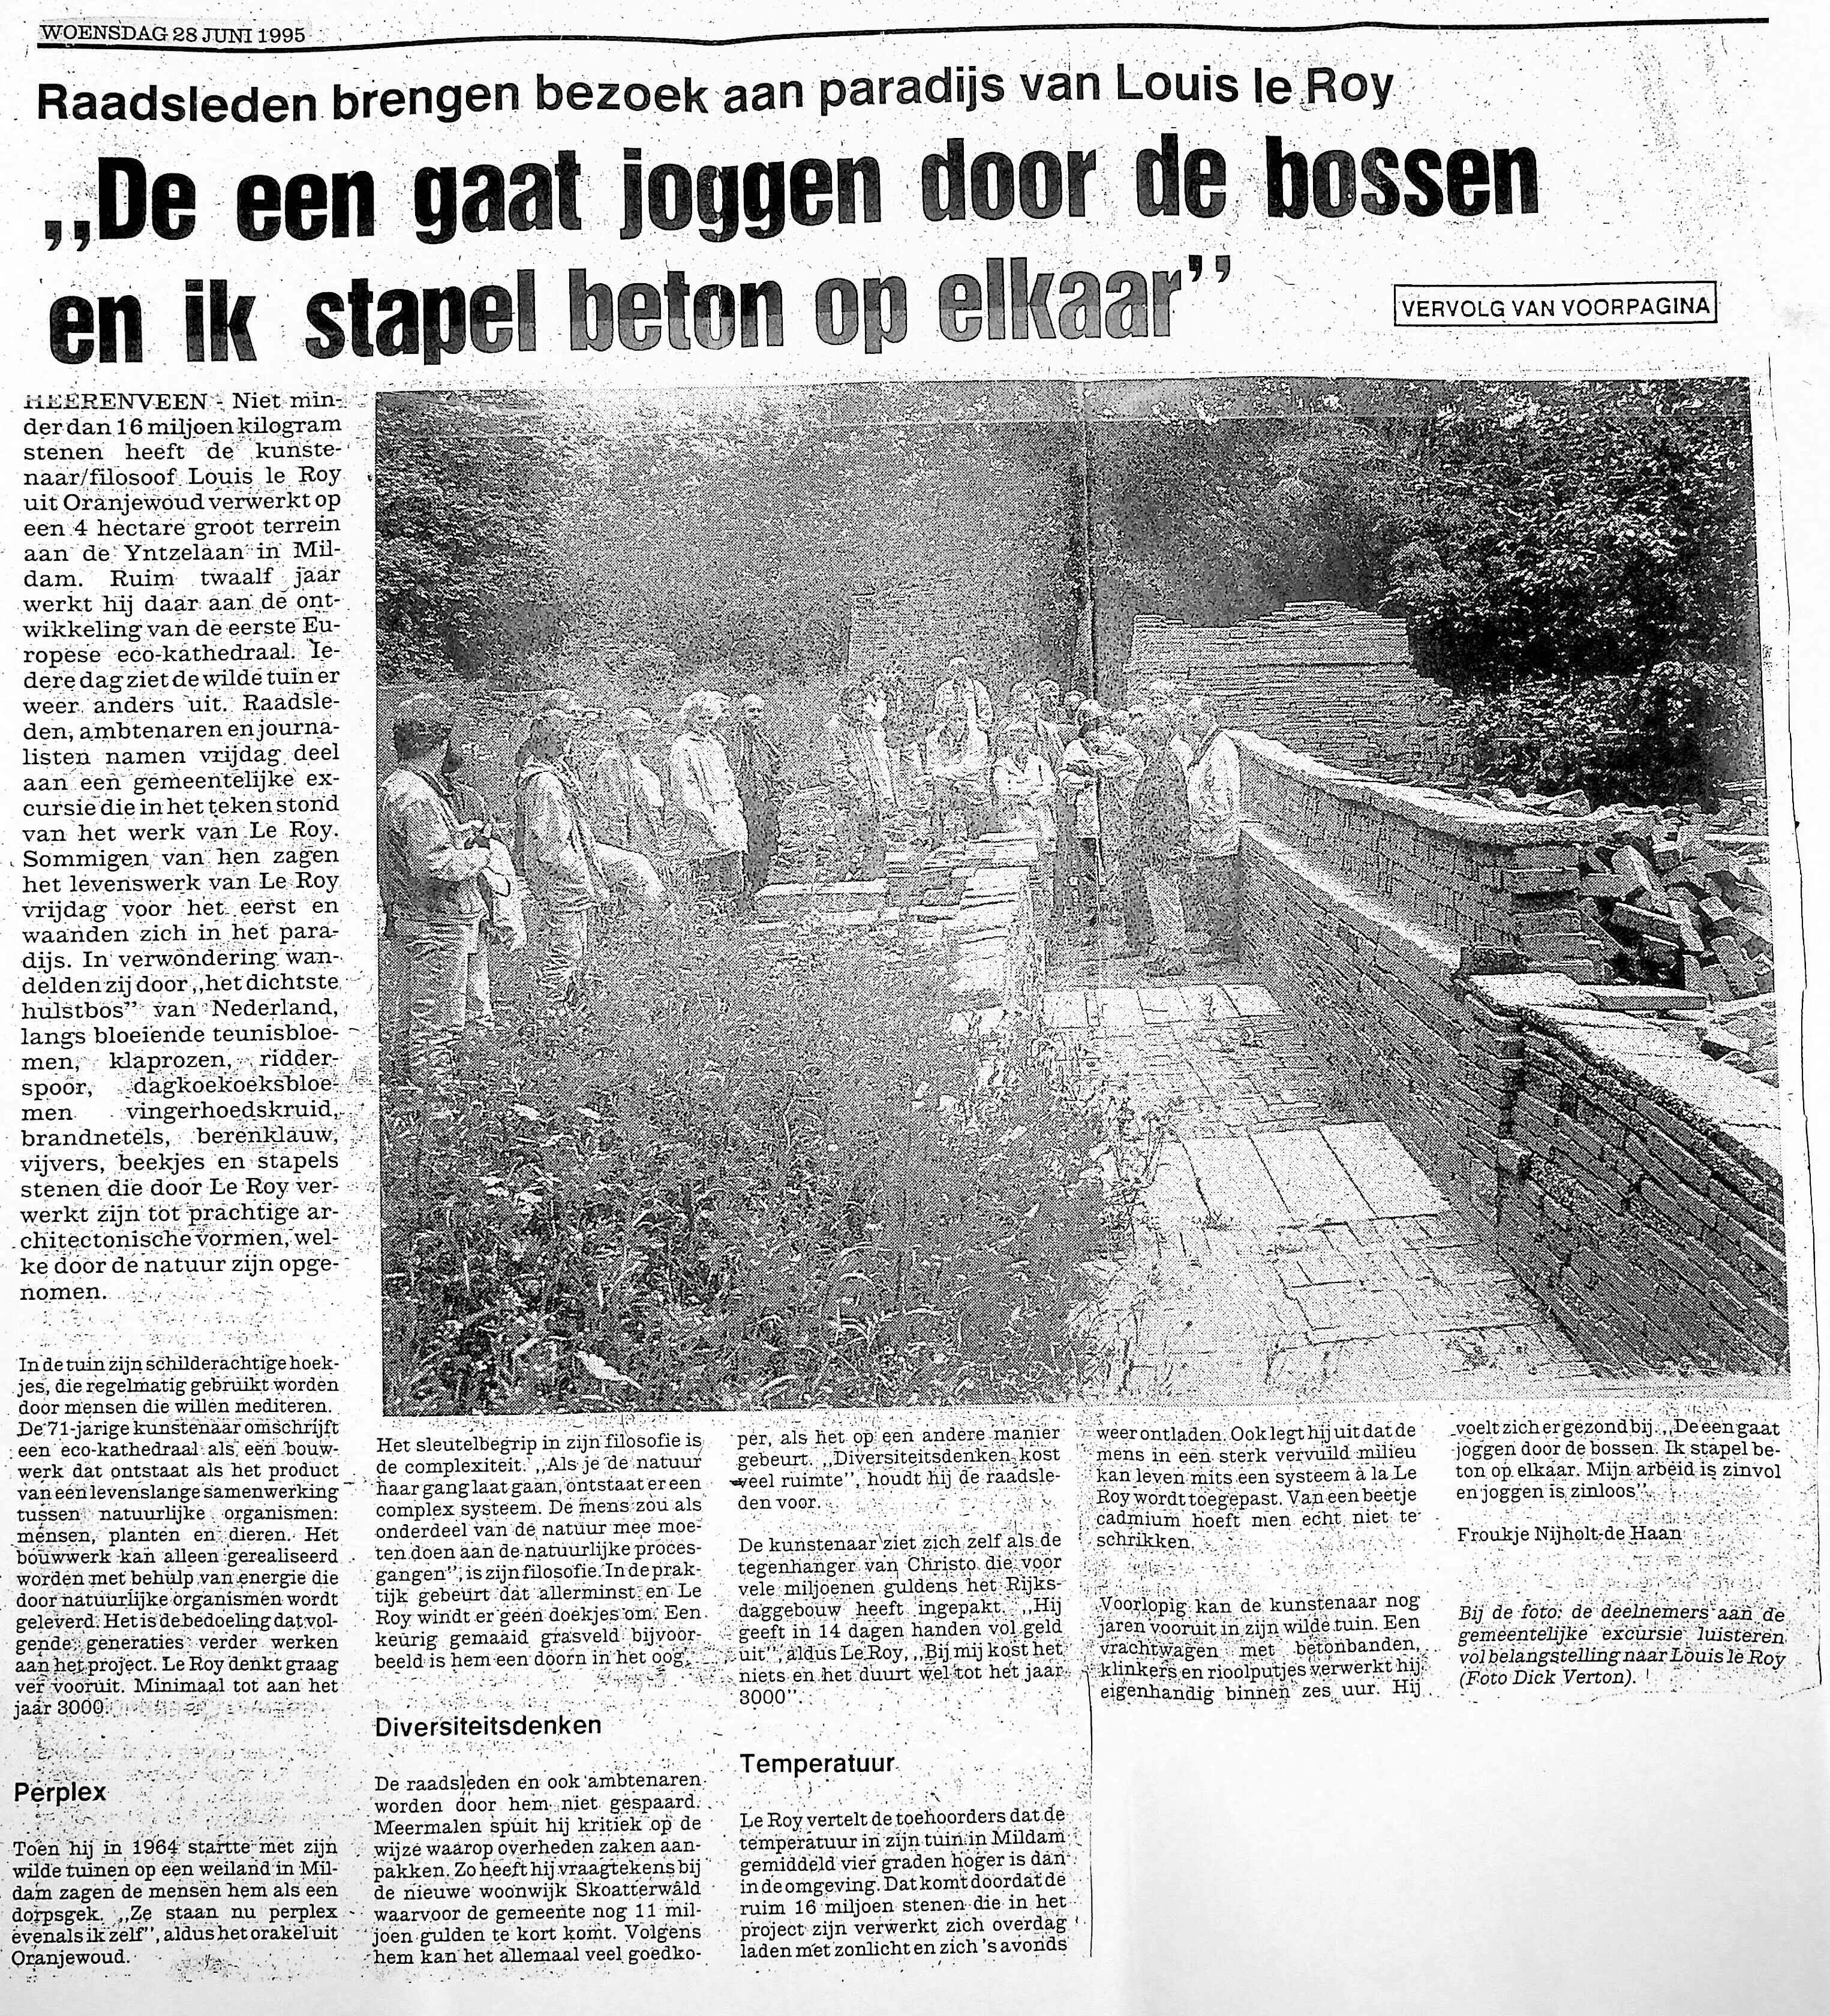 19950628_De_een_gaat_joggen_door_de_bossen_en_ik_stapel_beton_op_elkaar.jpg